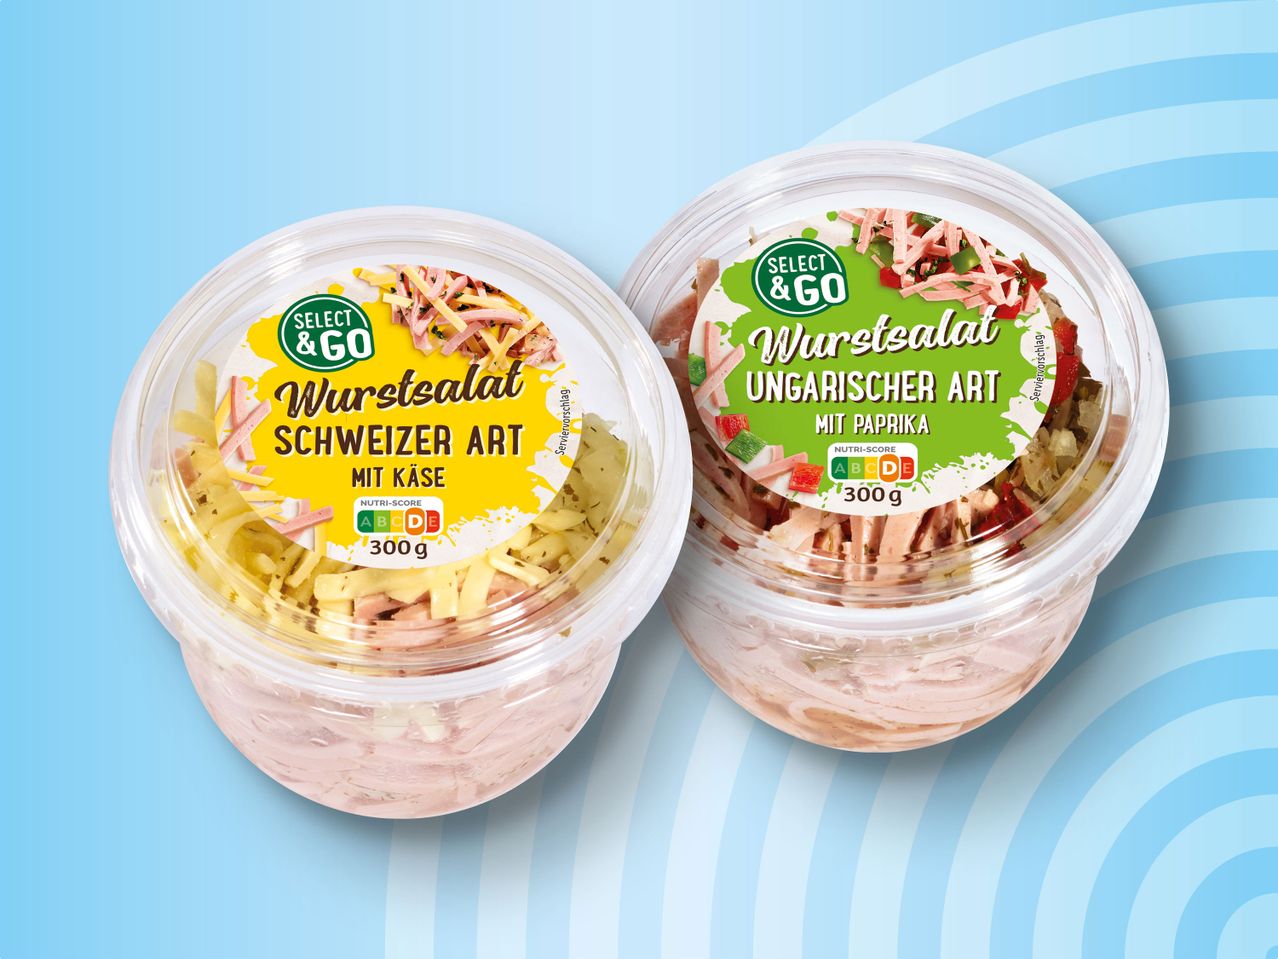 Select & Wurstsalat Becher im Go